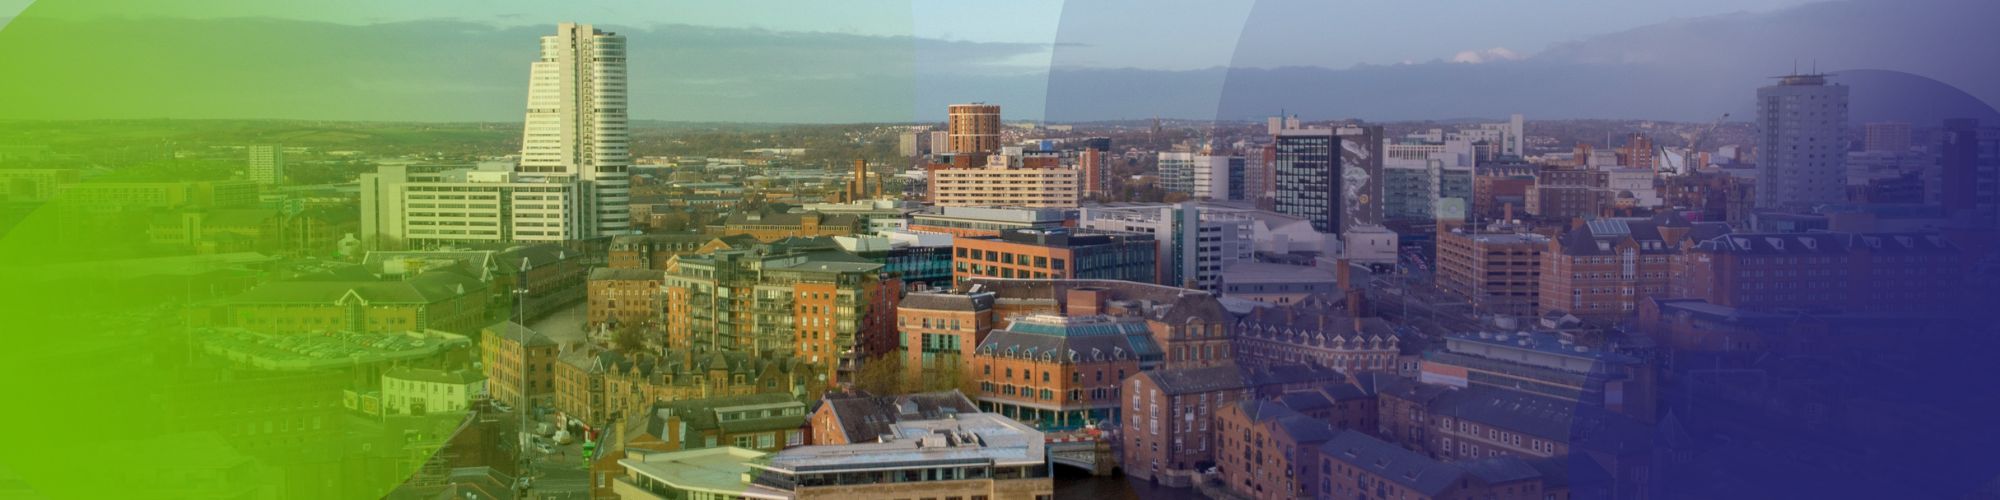 Leeds £50M office scheme gets green light